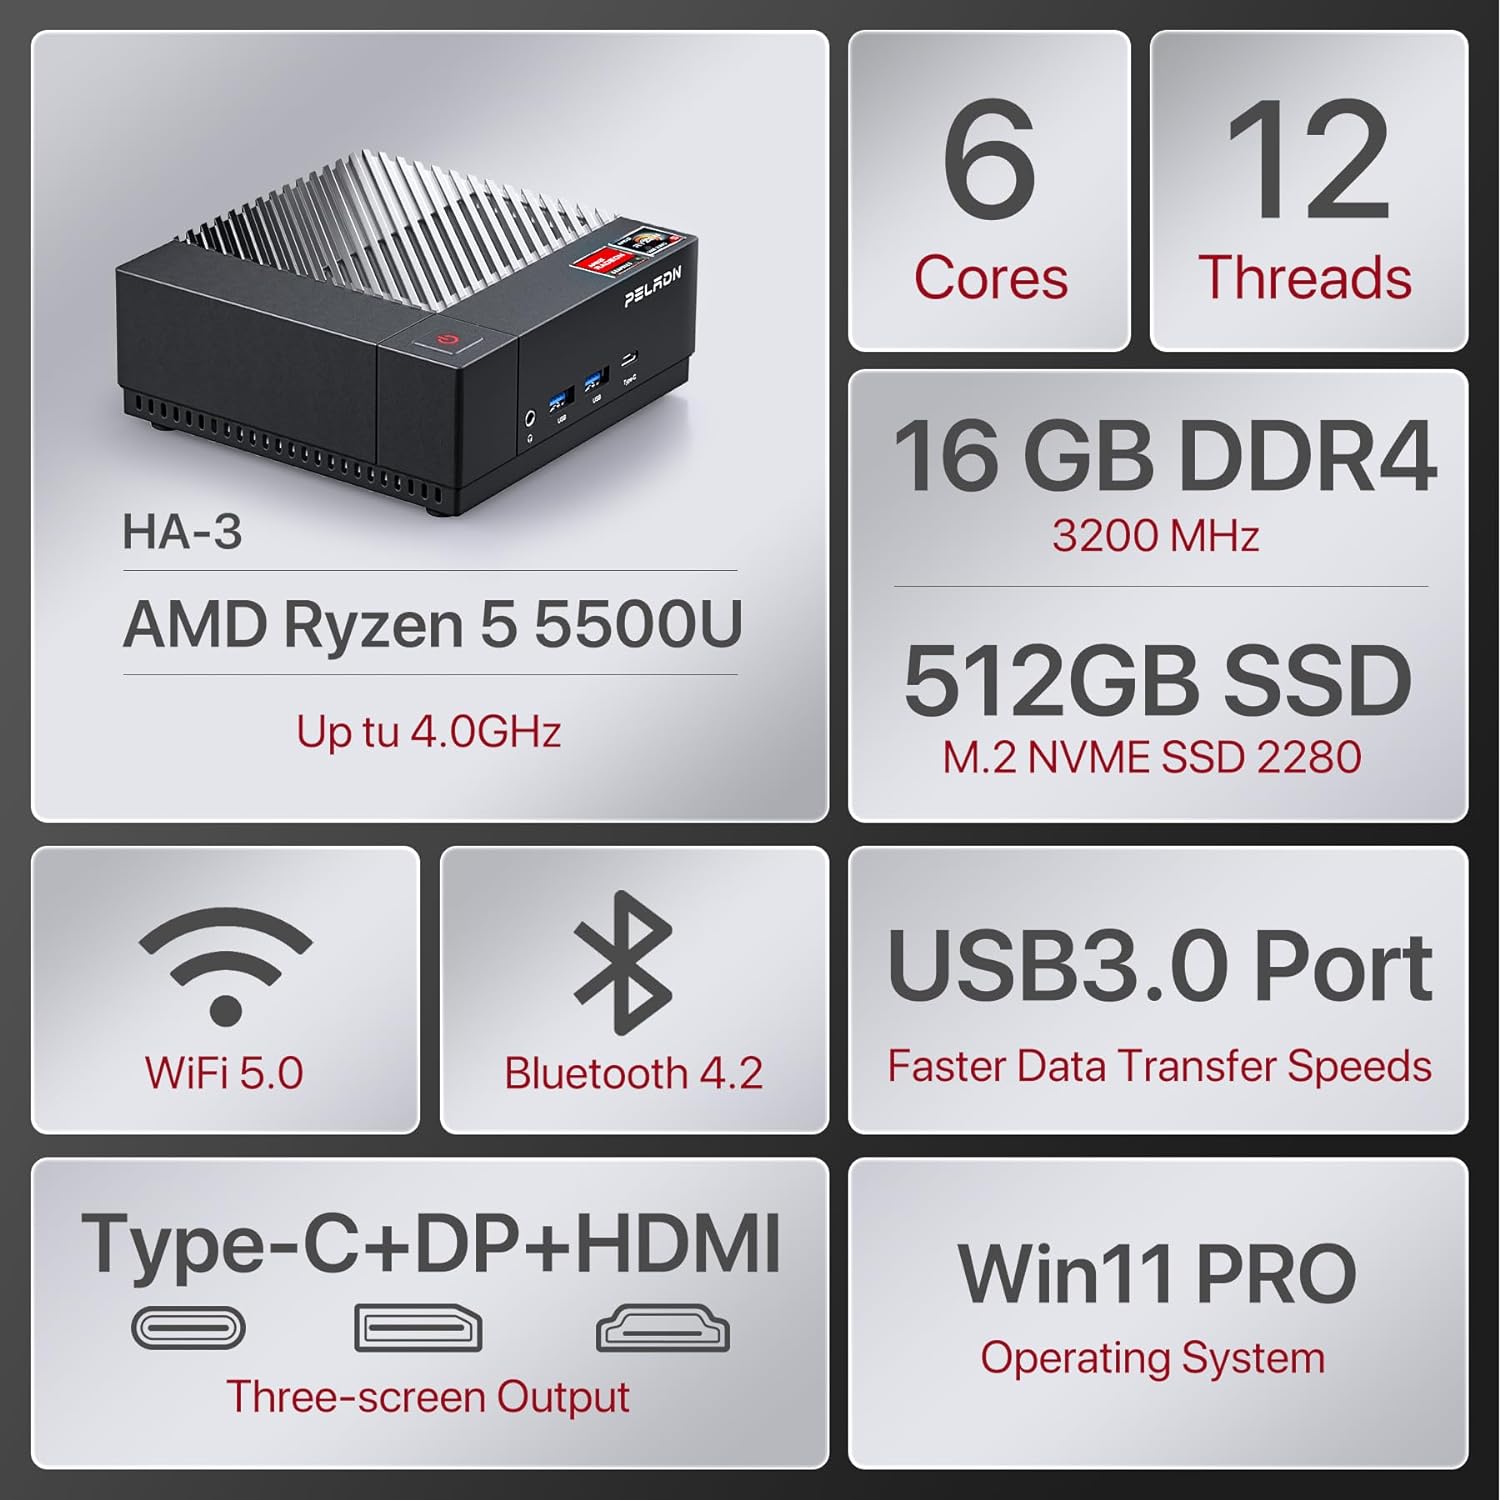 PELADN HA-3 Mini PC, AMD Ryzen 5 5500U (6C/12T up to 4.0Ghz), 16GB DDR4 3200MHz, 512GB NVME SSD, Win 11 Pro, 4K@60Hz HDMI 2.0,Dual LAN, WiFi 5, Bluetooth 4.2, Compact Desktop Computers.